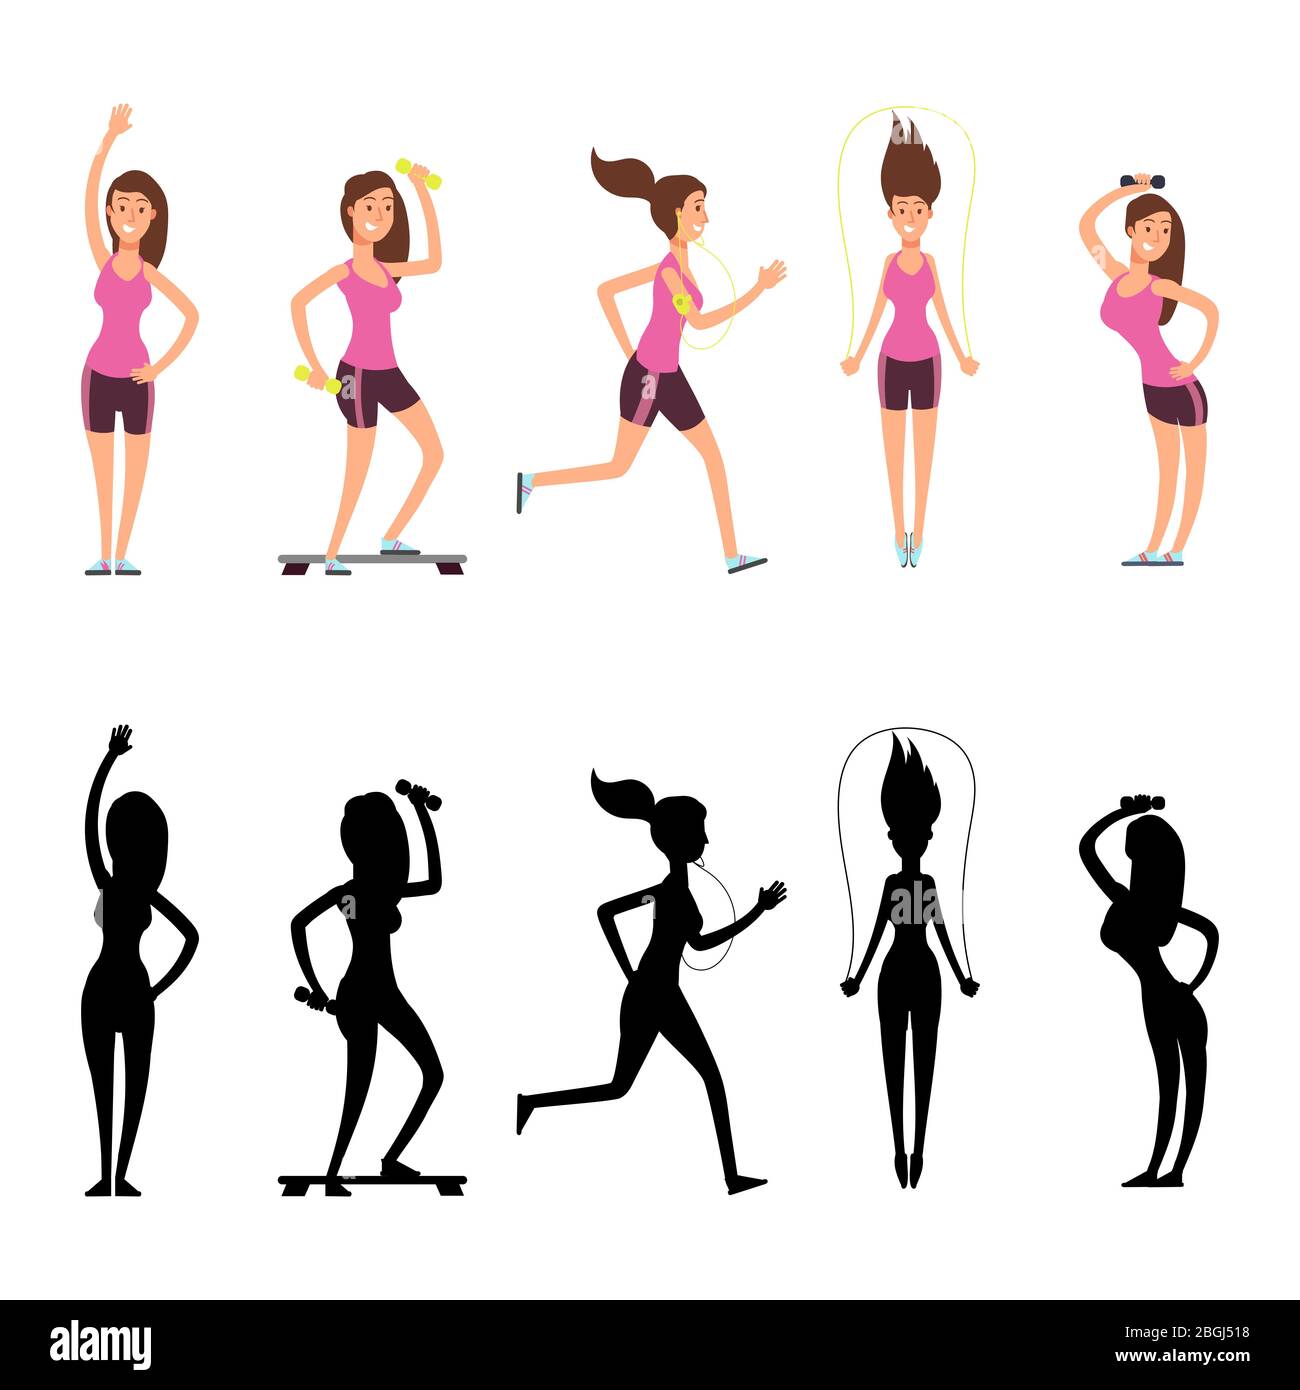 Personaggi sportivi donna. Silhouette fitness femminile Vector isolate su sfondo bianco. Allenamento di giovane ragazza con silhouette nera, illustrazione sportiva e attiva Illustrazione Vettoriale